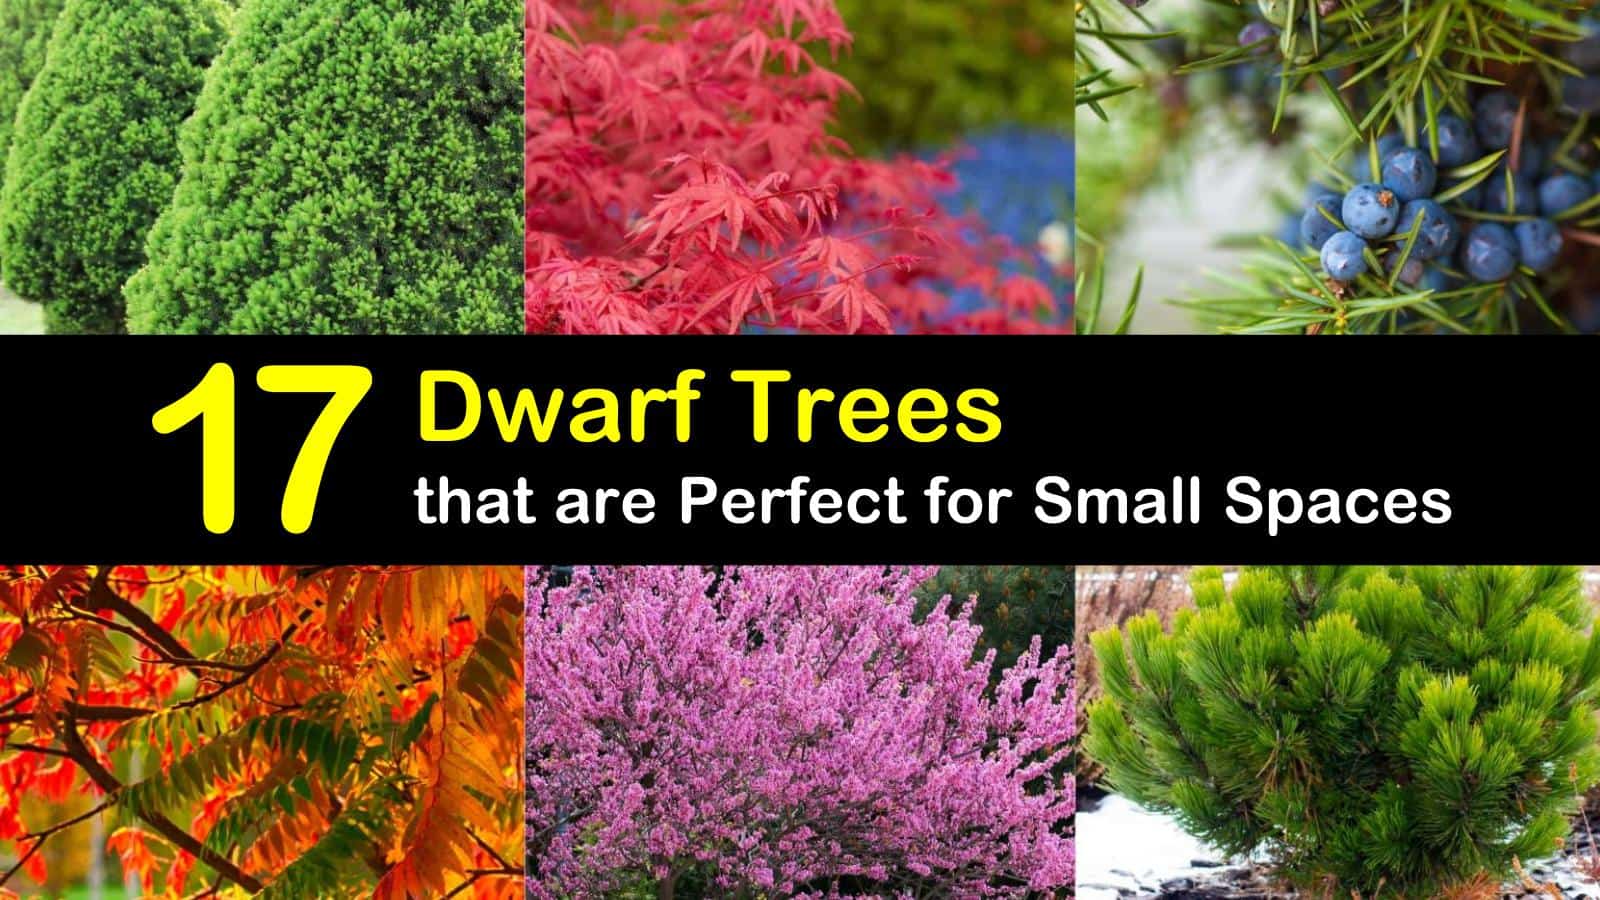 dwarf trees titleimg1